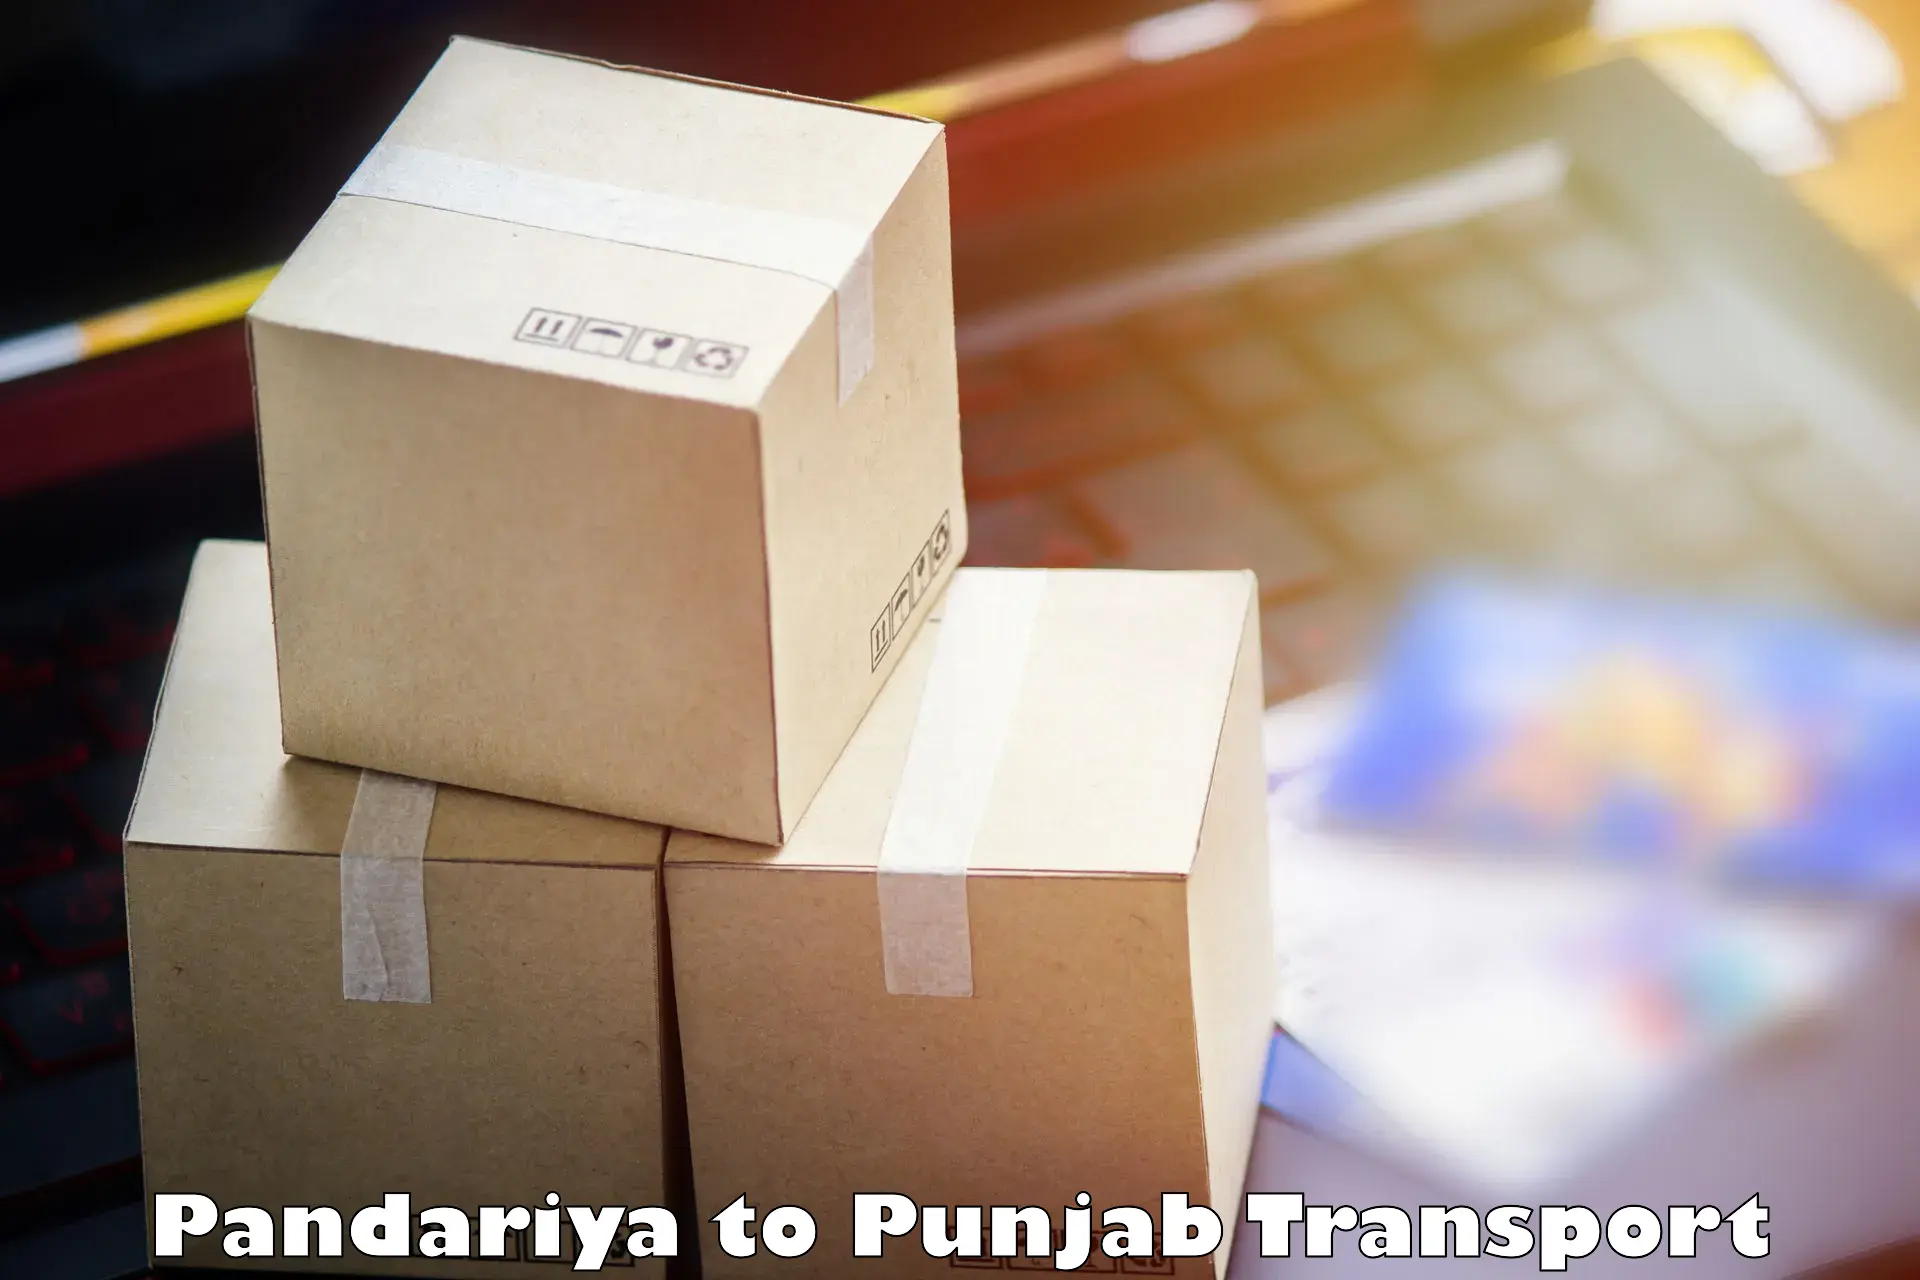 Road transport online services Pandariya to Punjab